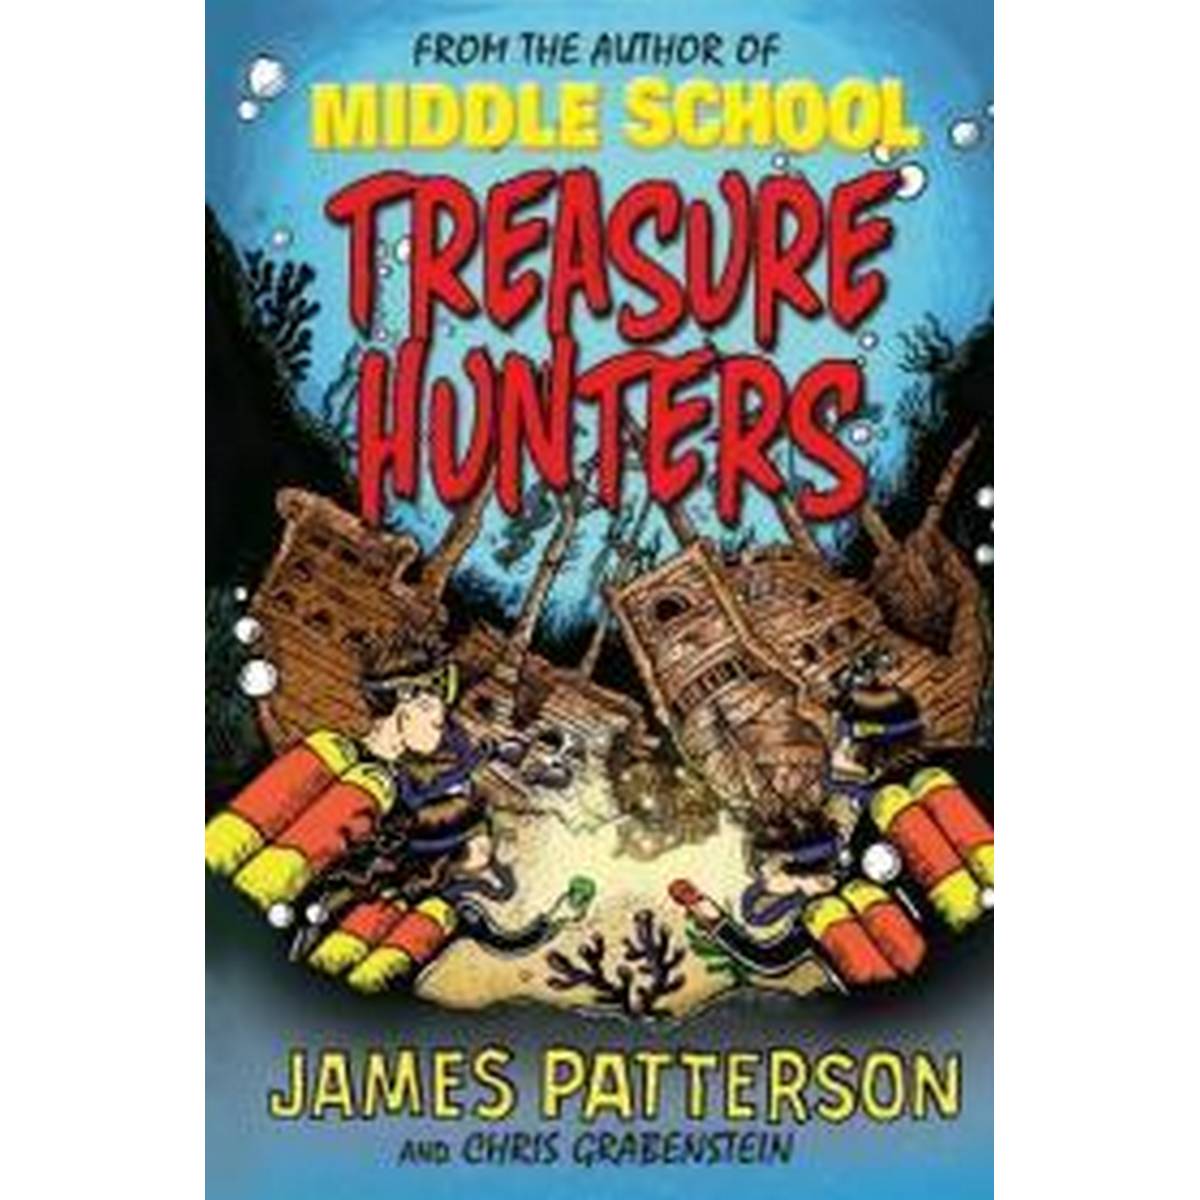 Treasure Hunters: